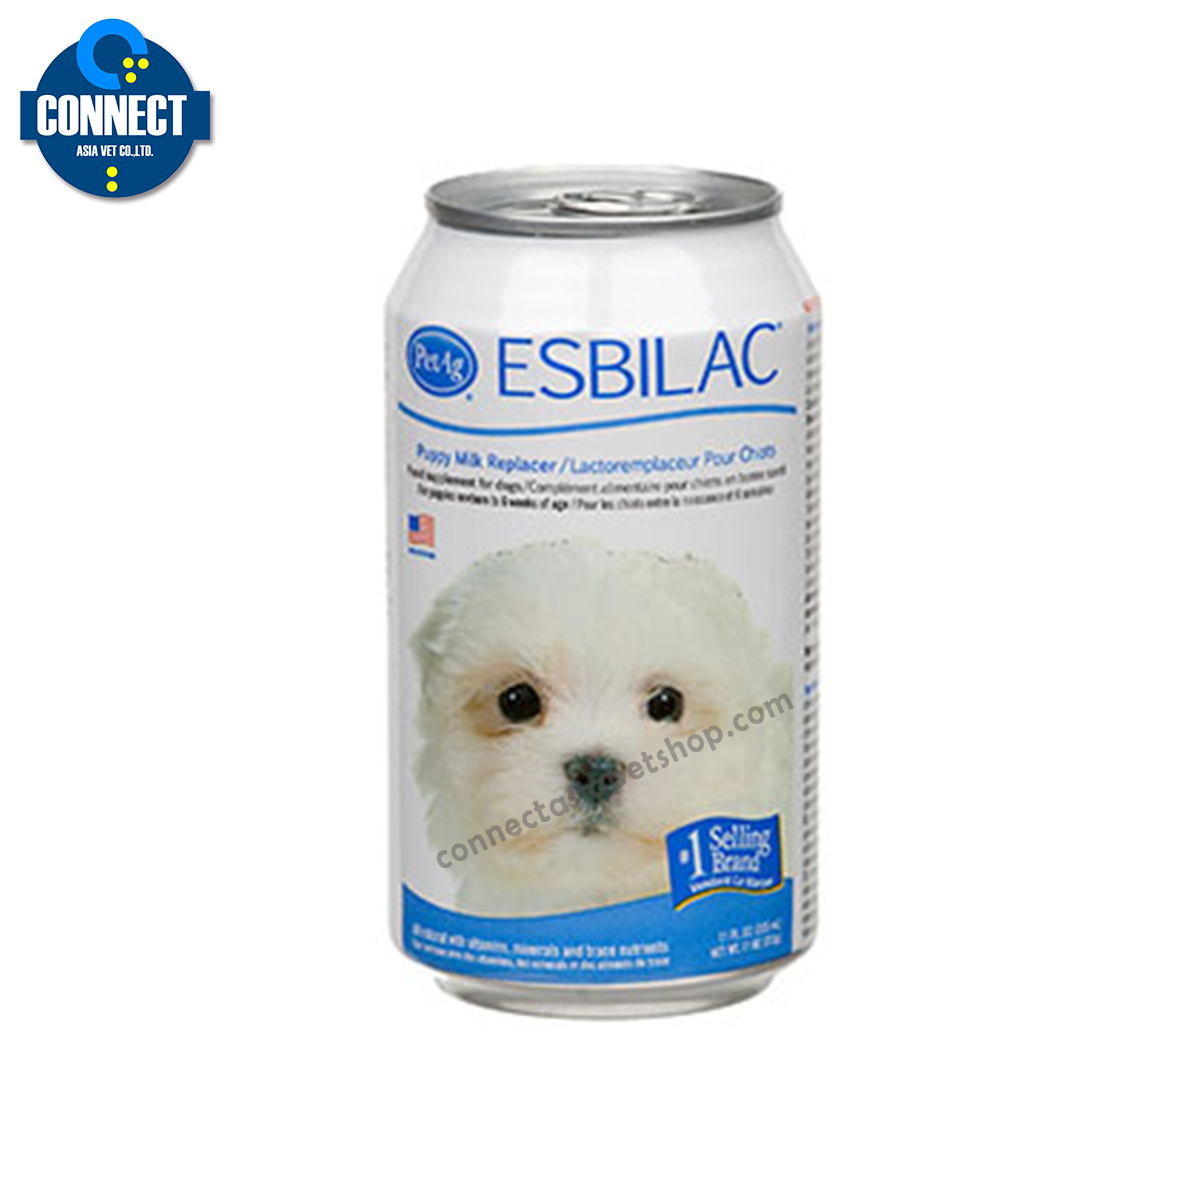 นมพร้อมดื่มสำหรับลูกสุนัข Esbilac (340 กรัม)